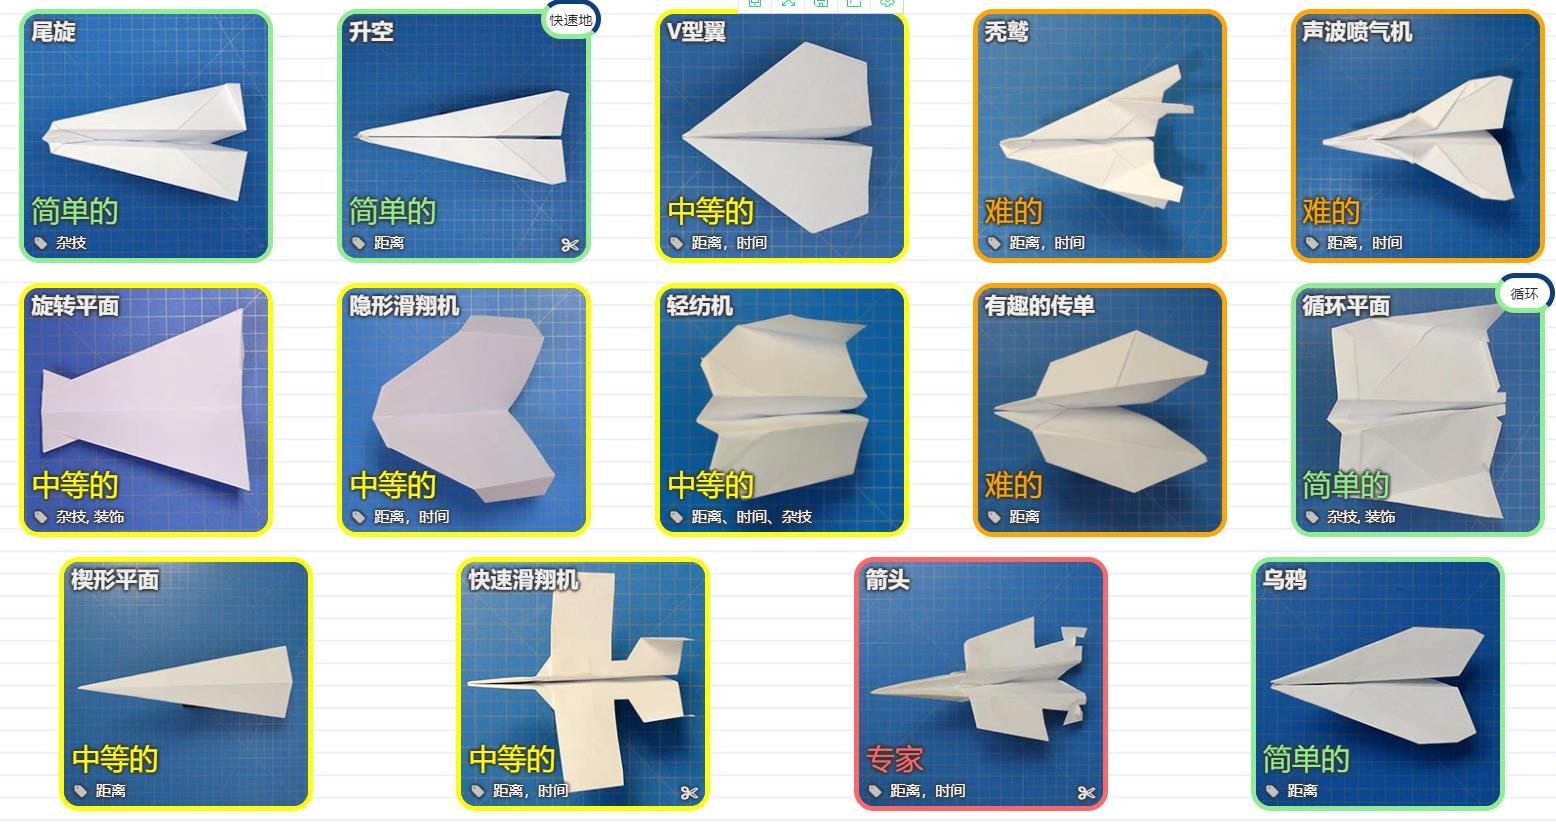 技巧和想法,帮助你最大限度的提高纸飞机的性能,例如折叠使用的纸张